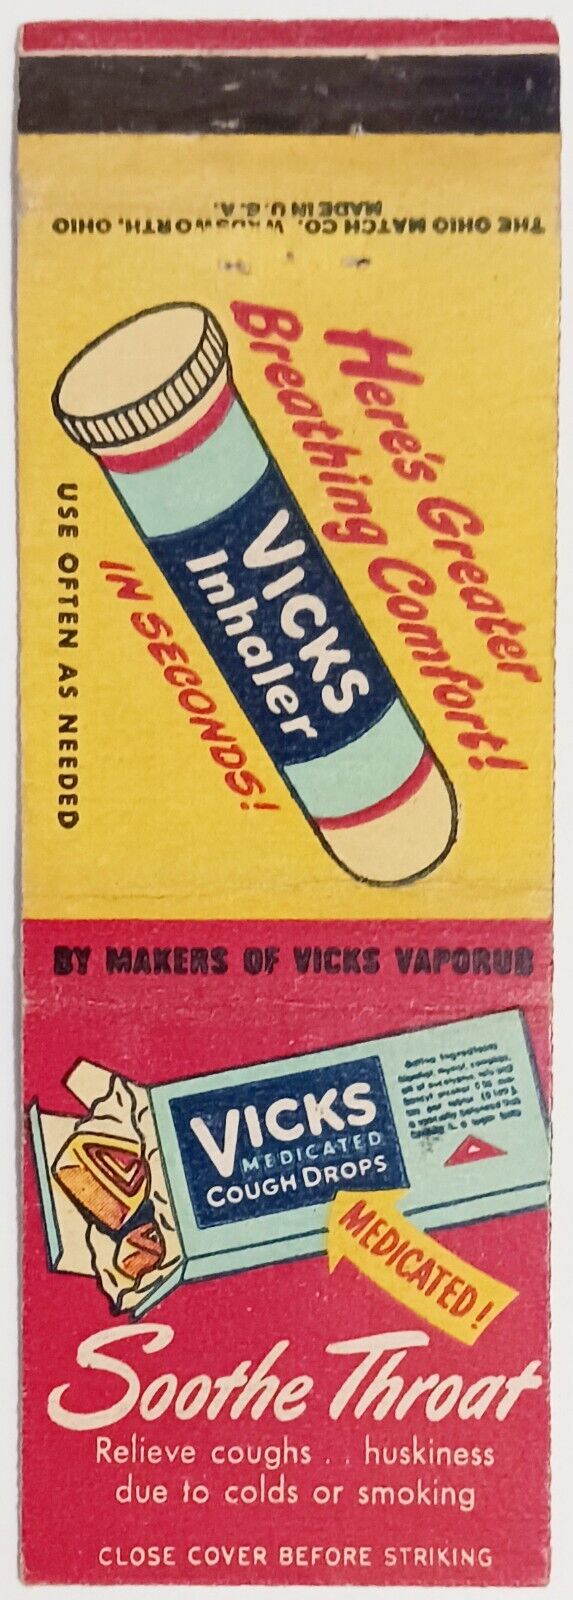 Vicks Medicated Cough Drops, Vicks Inhaler Vintage Matchbook Cover